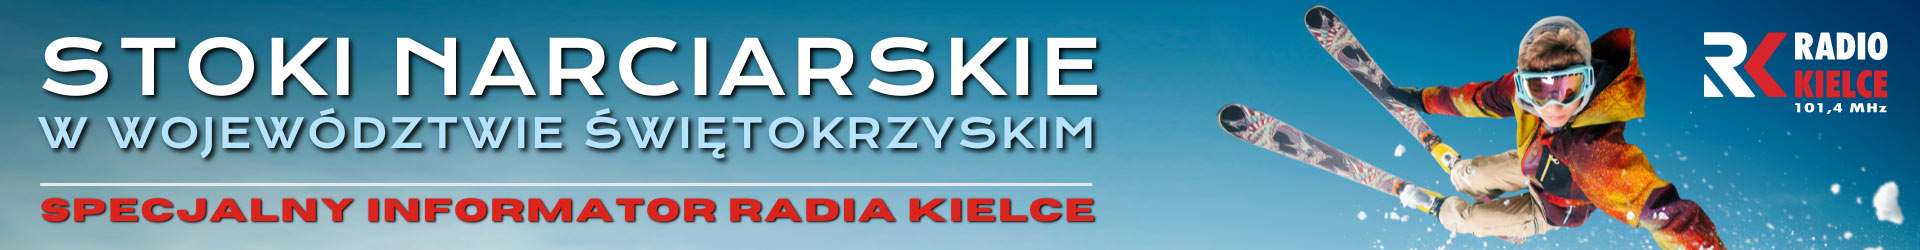 https://radiokielce.pl/swietokrzyskie-stoki-narciarskie/